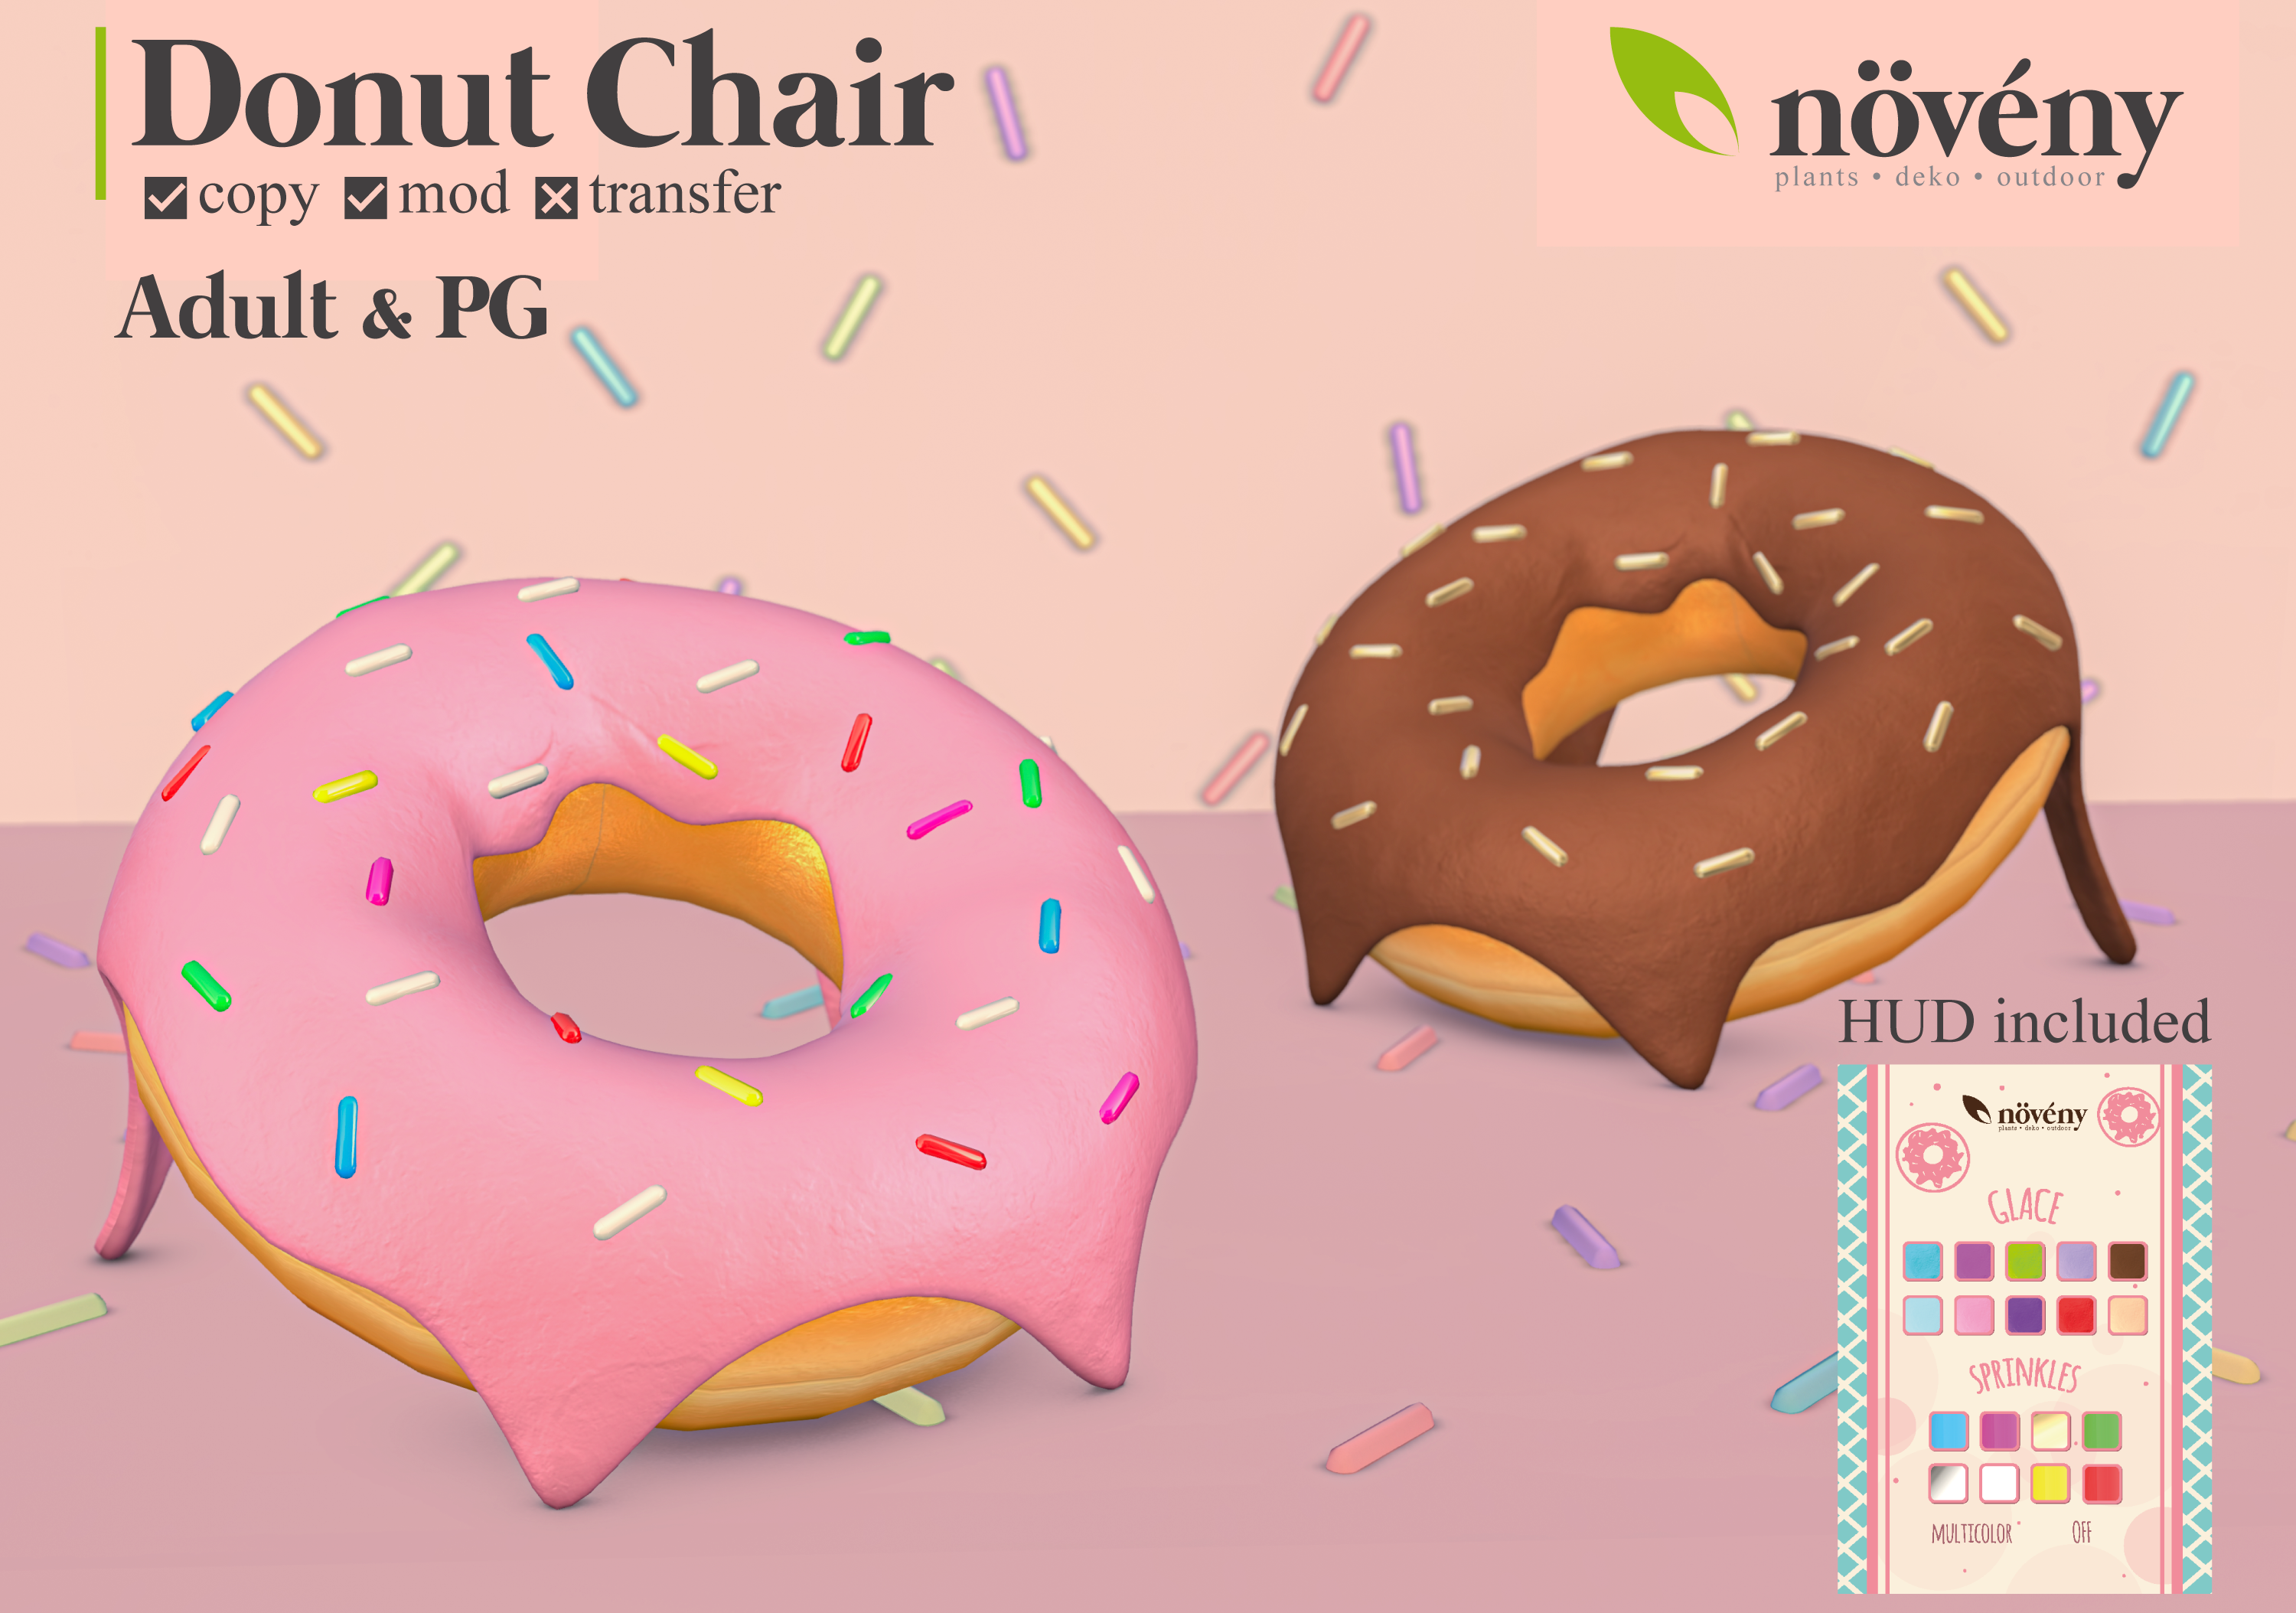 Noveny – Donut Chair